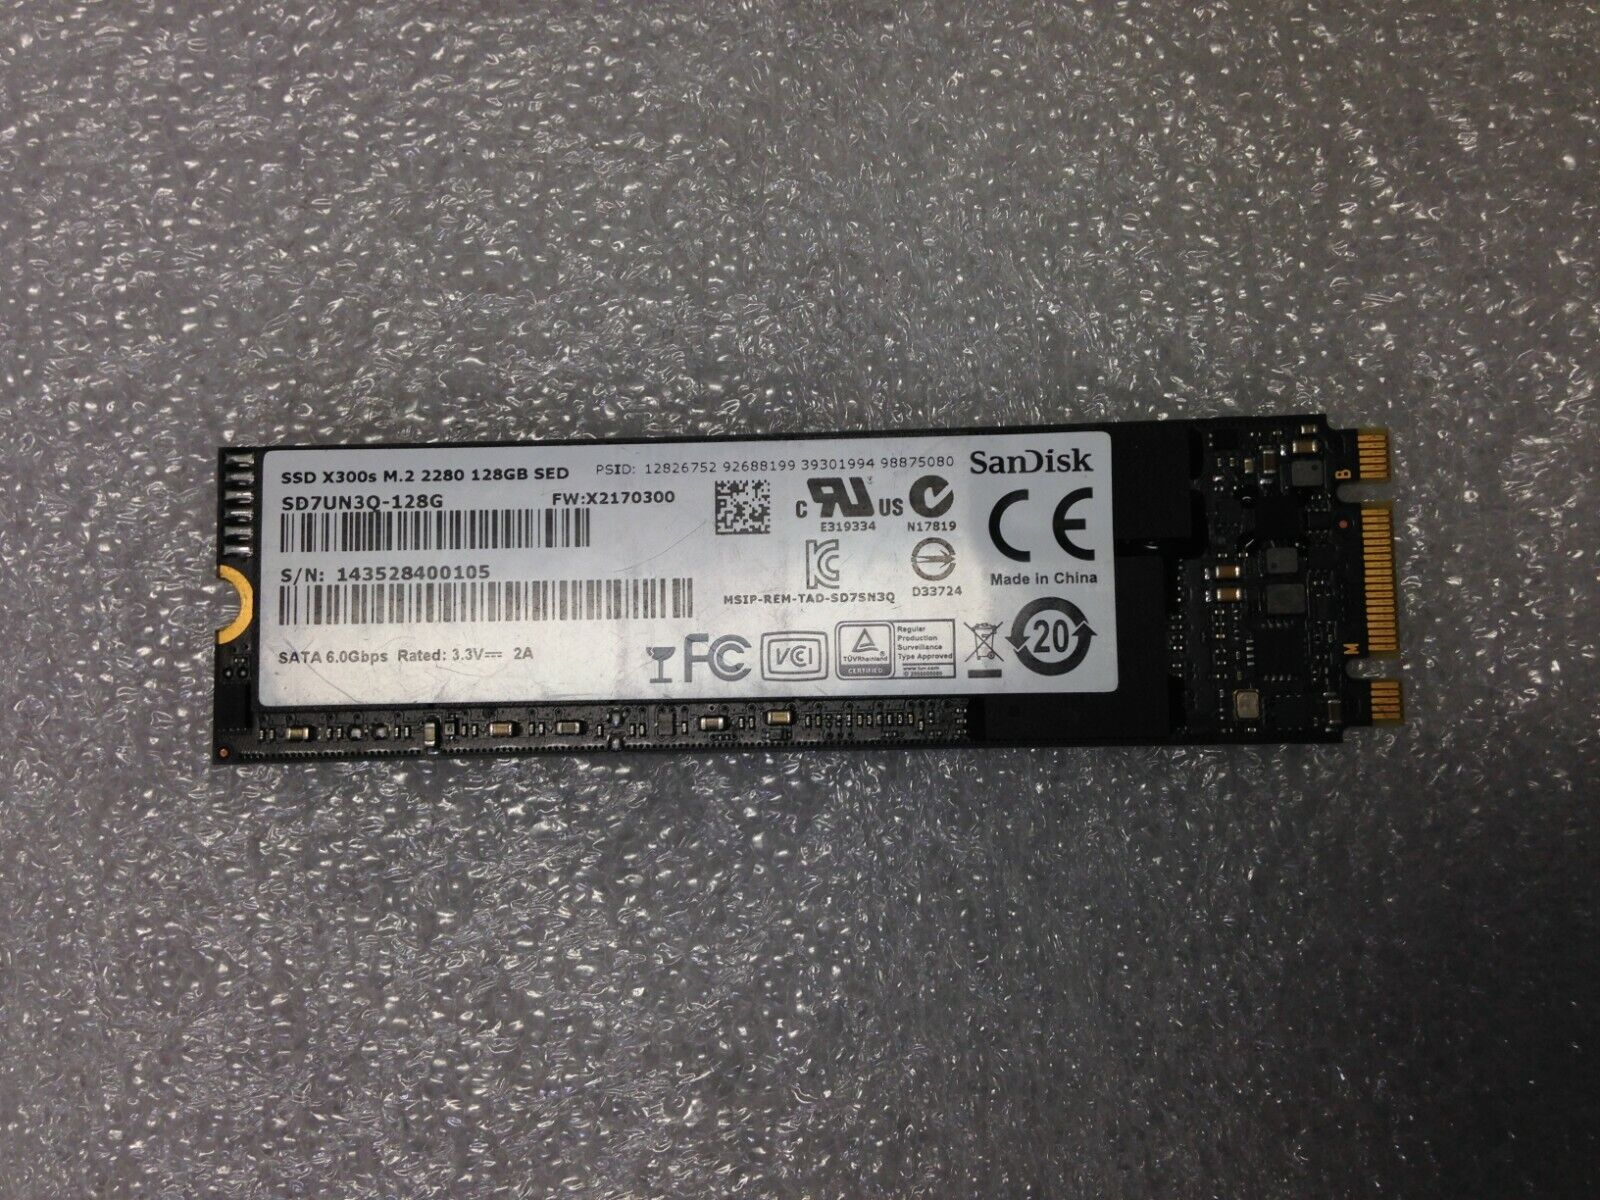 SanDisk SD7UN3Q-128G SSD X300s M.2 2280 128GB SED Used tested